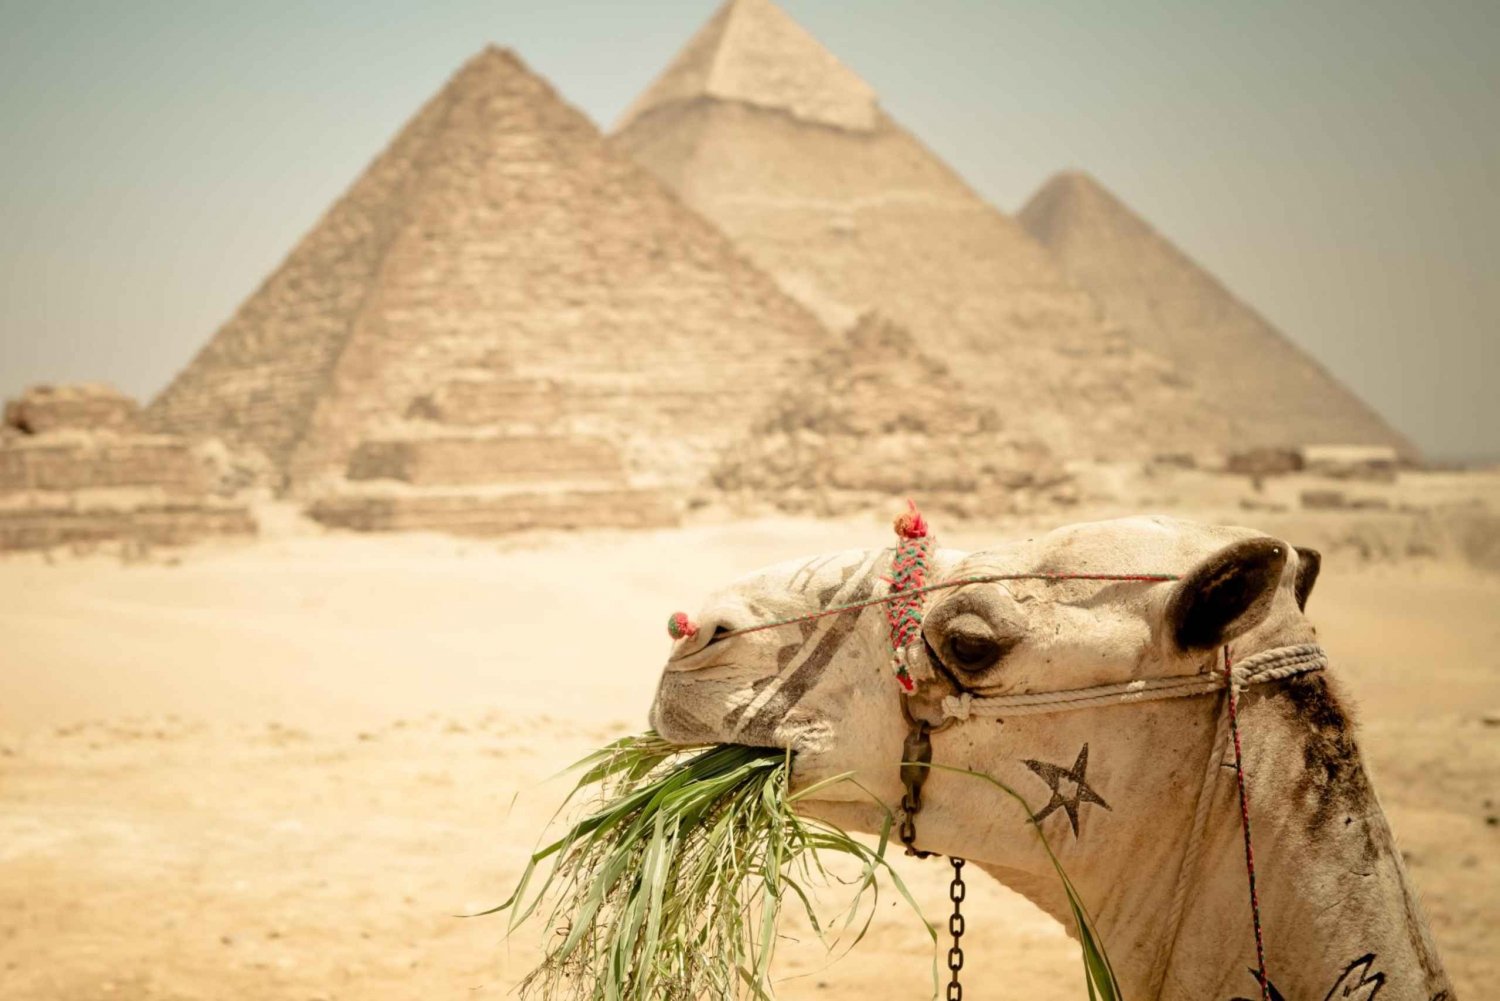 Kairo: Pyramidtur, båttur och lunch på Cafelucca